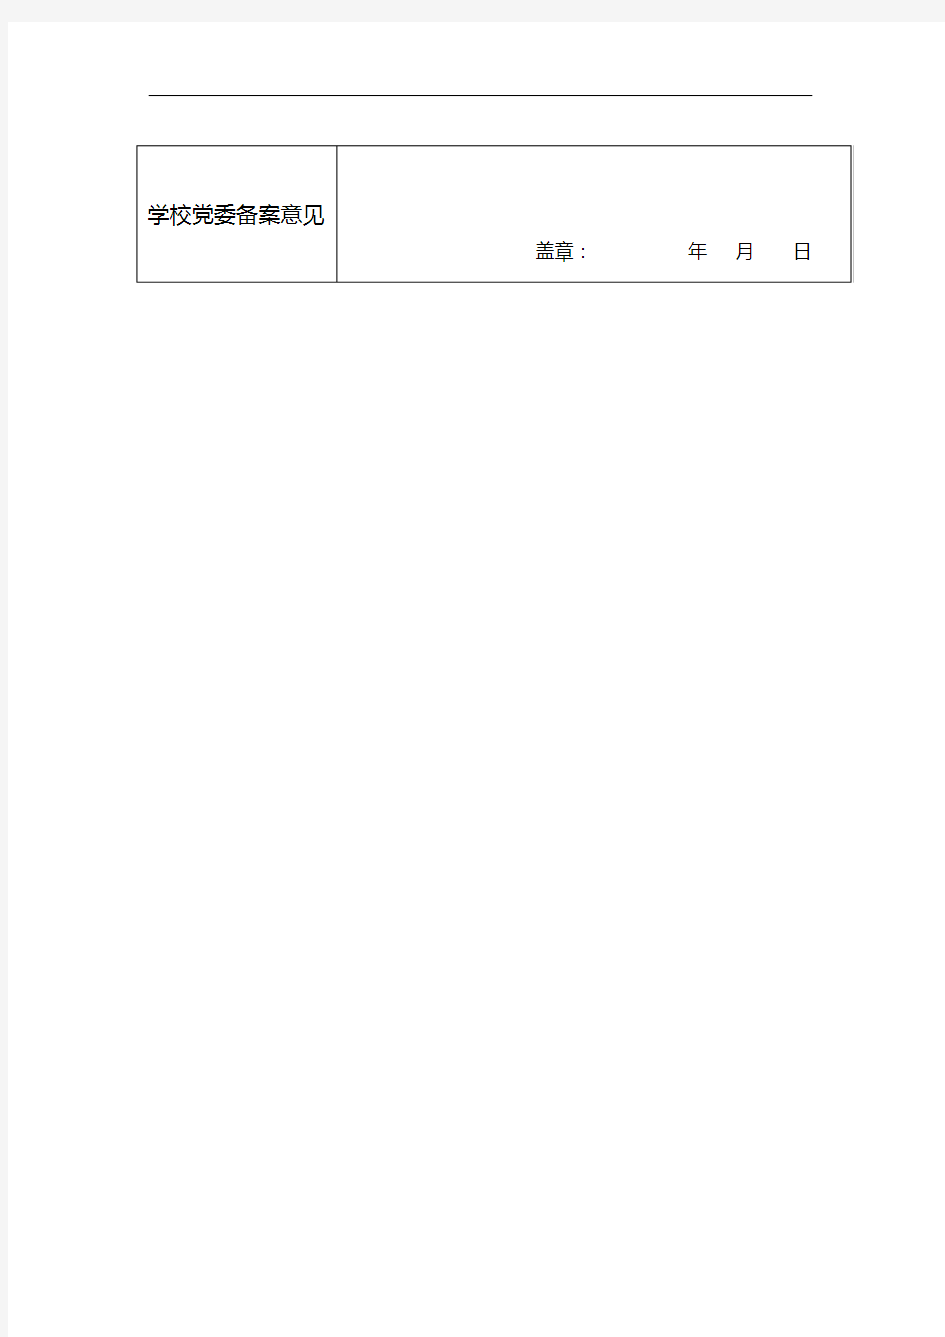 二级党委(党总支)党支部设置备案登记表